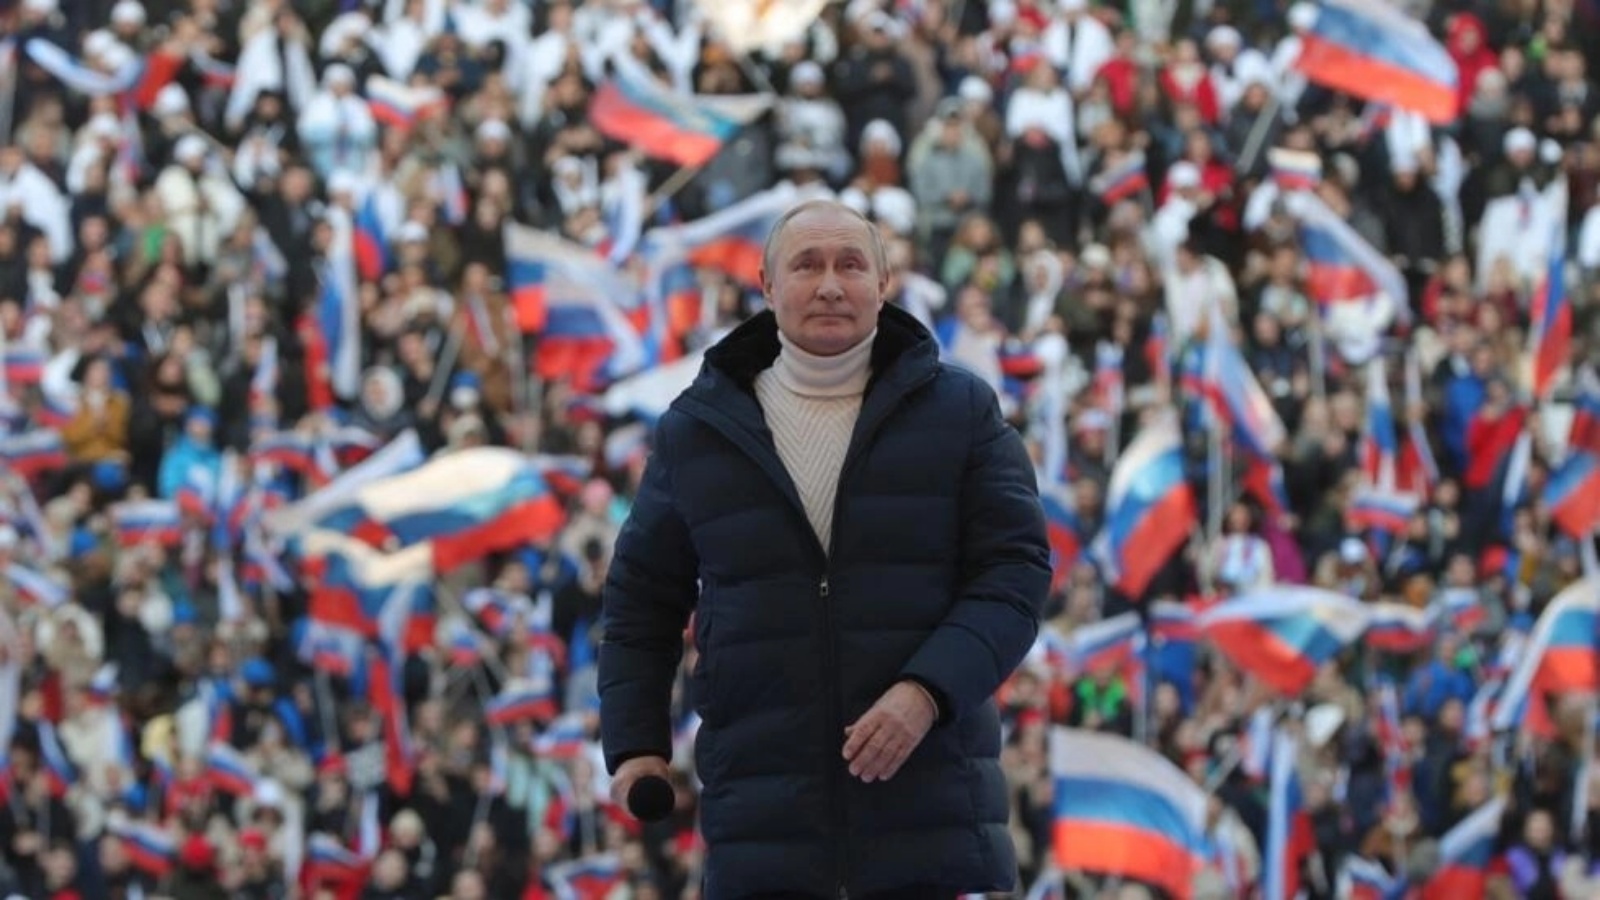 يحتفل فلاديمير بوتين بالذكرى الثامنة لضم شبه جزيرة القرم إلى موسكو، في ملعب لوجنيكي الأولمبي. في 18 آذار (مارس) 2023